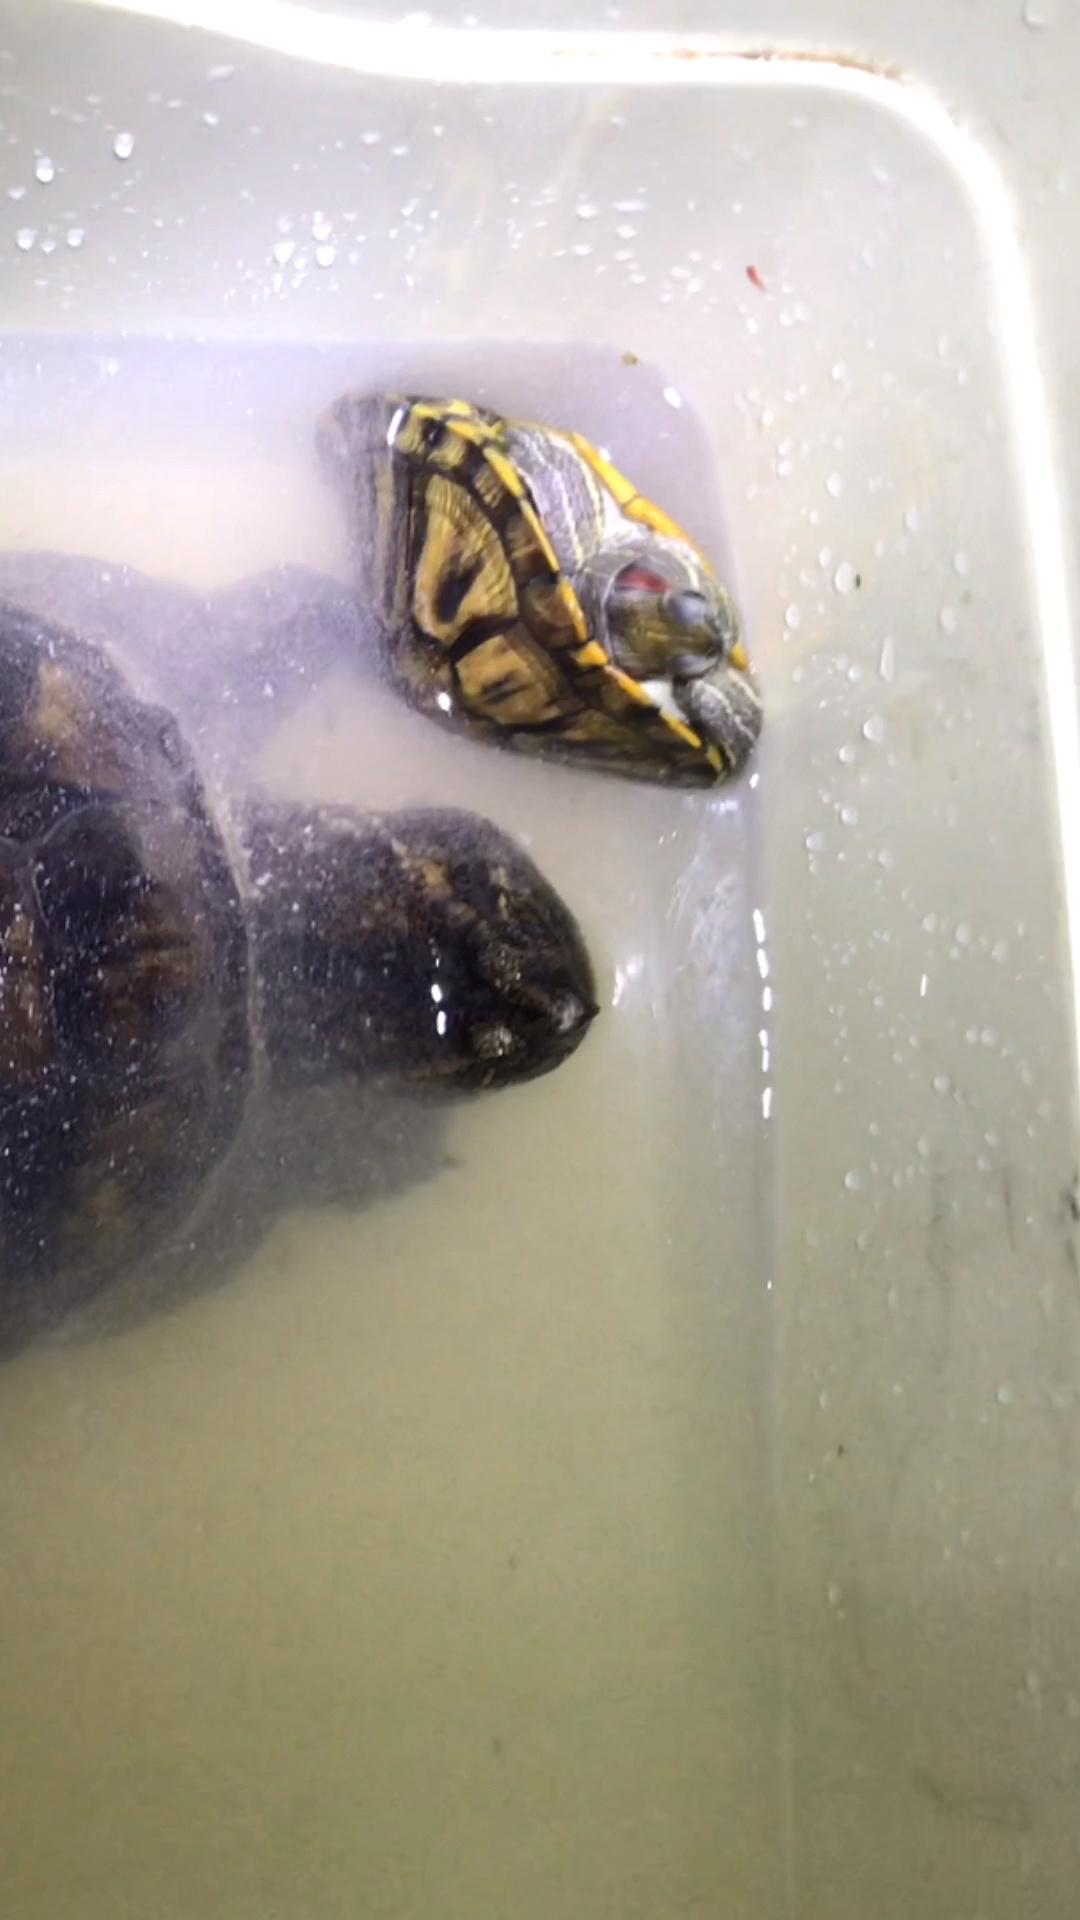 巴西龟和鳄龟放一起喂食巴西龟只能躲到角落瑟瑟发抖